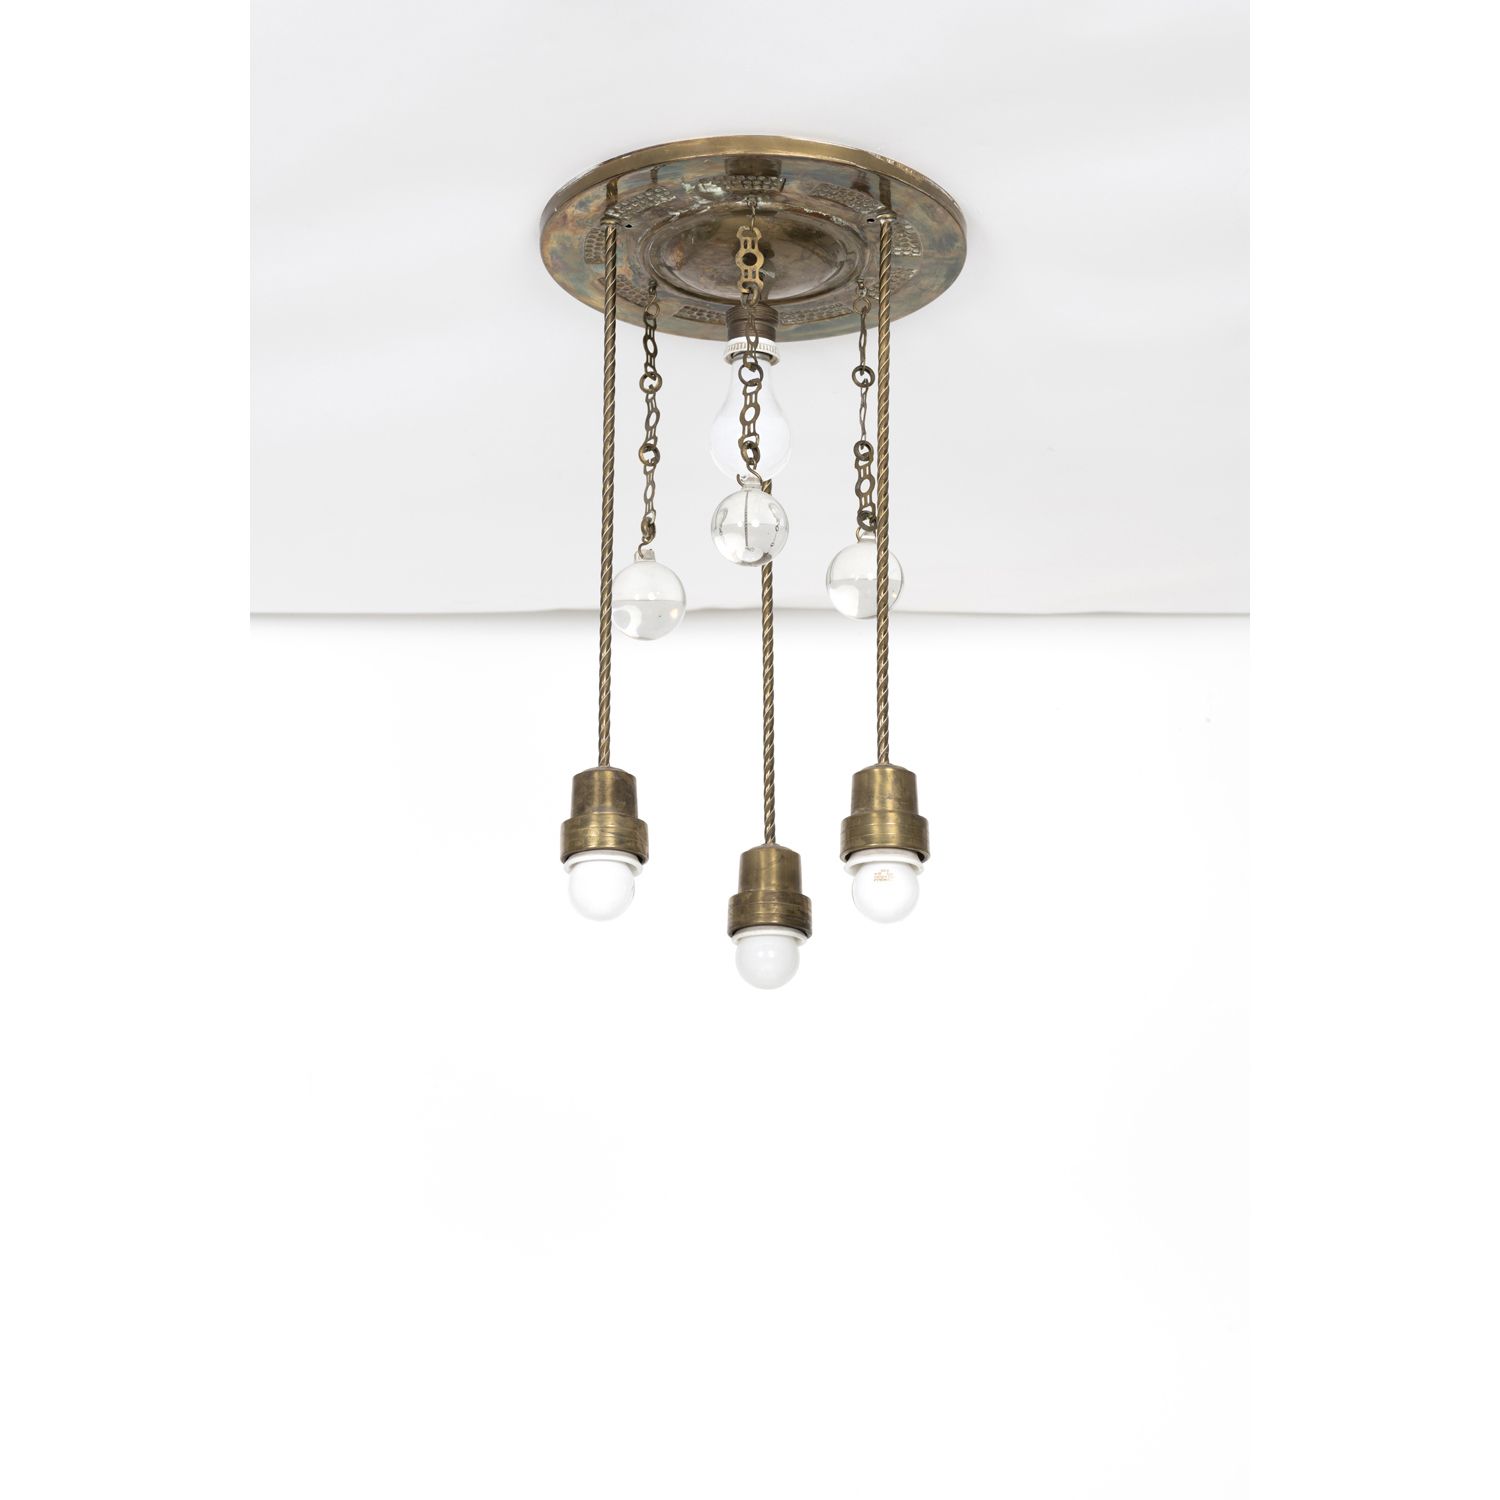 Null 奥地利作品（19-20世纪

吊灯，约1890-1900年

镀铜金属和玻璃

高52 × 直径30厘米